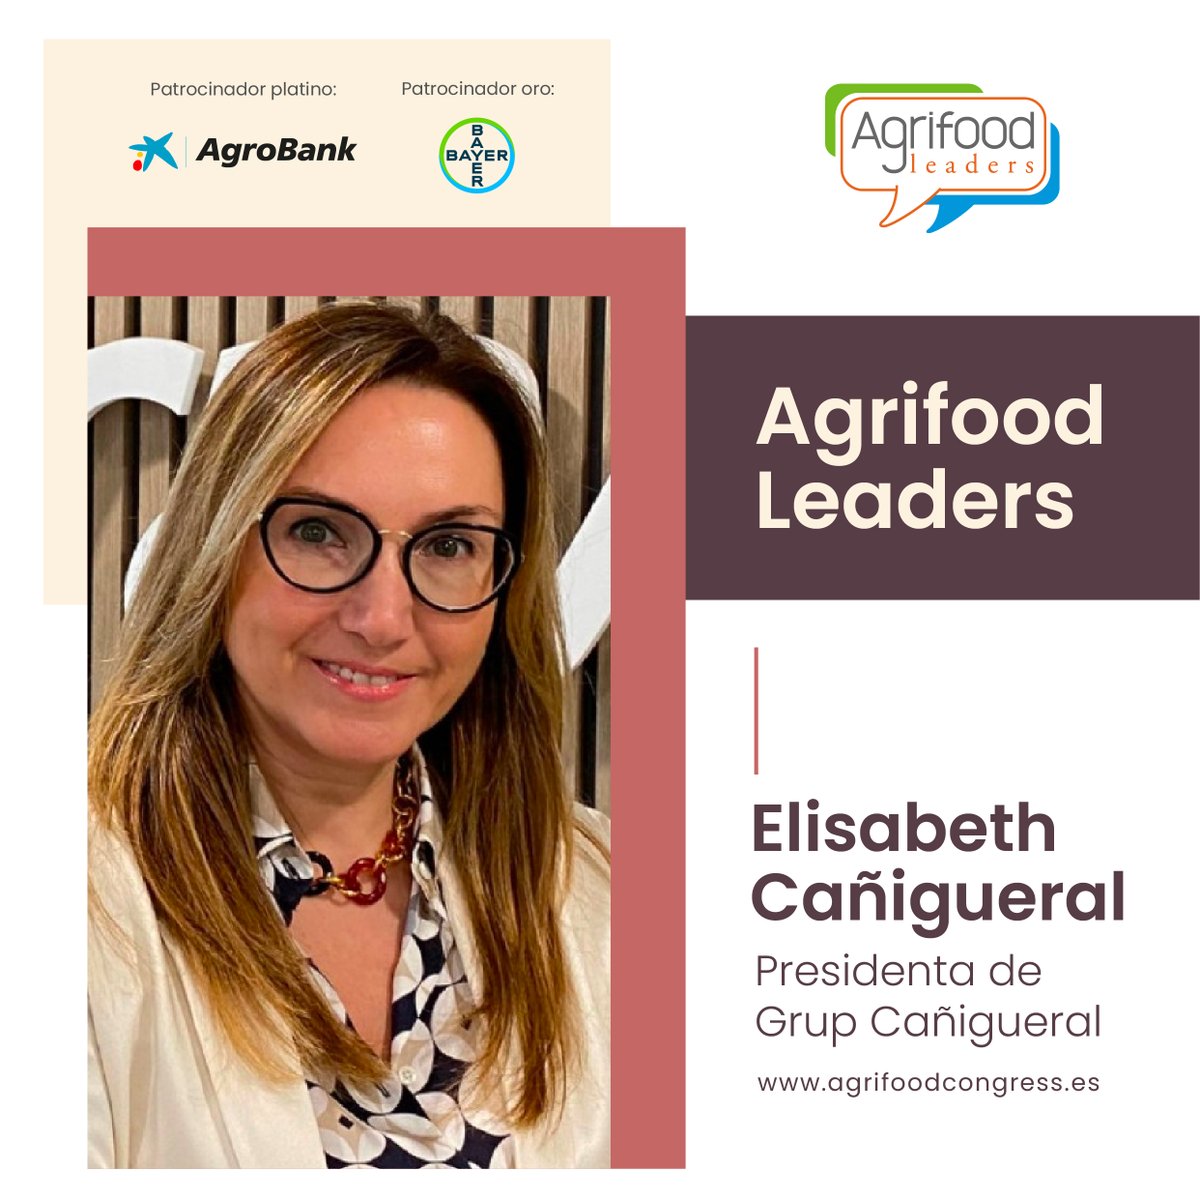 Elisabeth Cañigueral, presidenta de Grup Cañigueral también forma parte de la iniciativa #AgrifoodLeaders 👨‍💼💼👥

agrifoodcongress.es/key/leaders/ra…